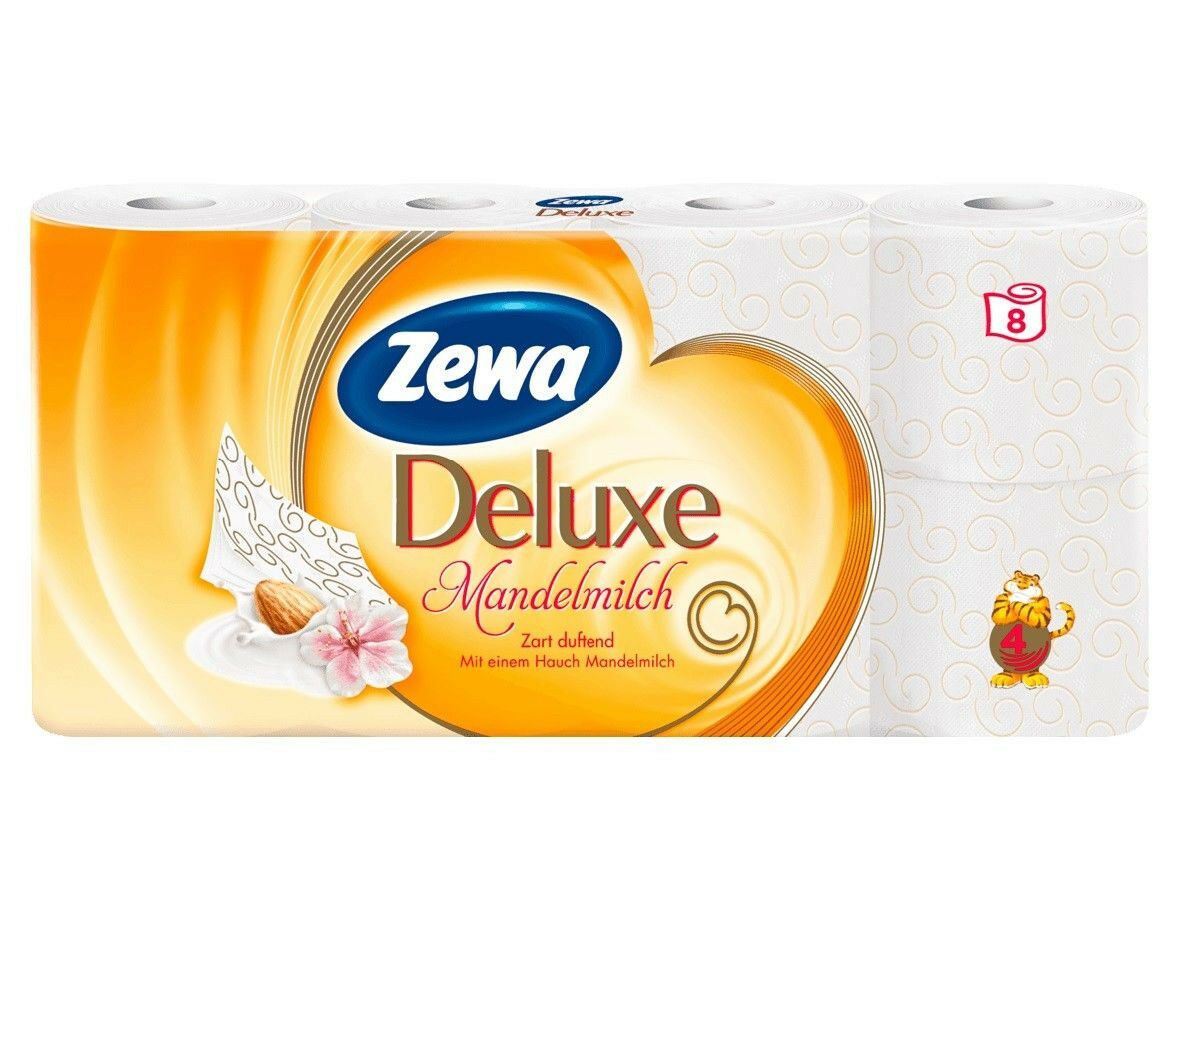 aga>Toilet Paper (10 rolls) Zewa